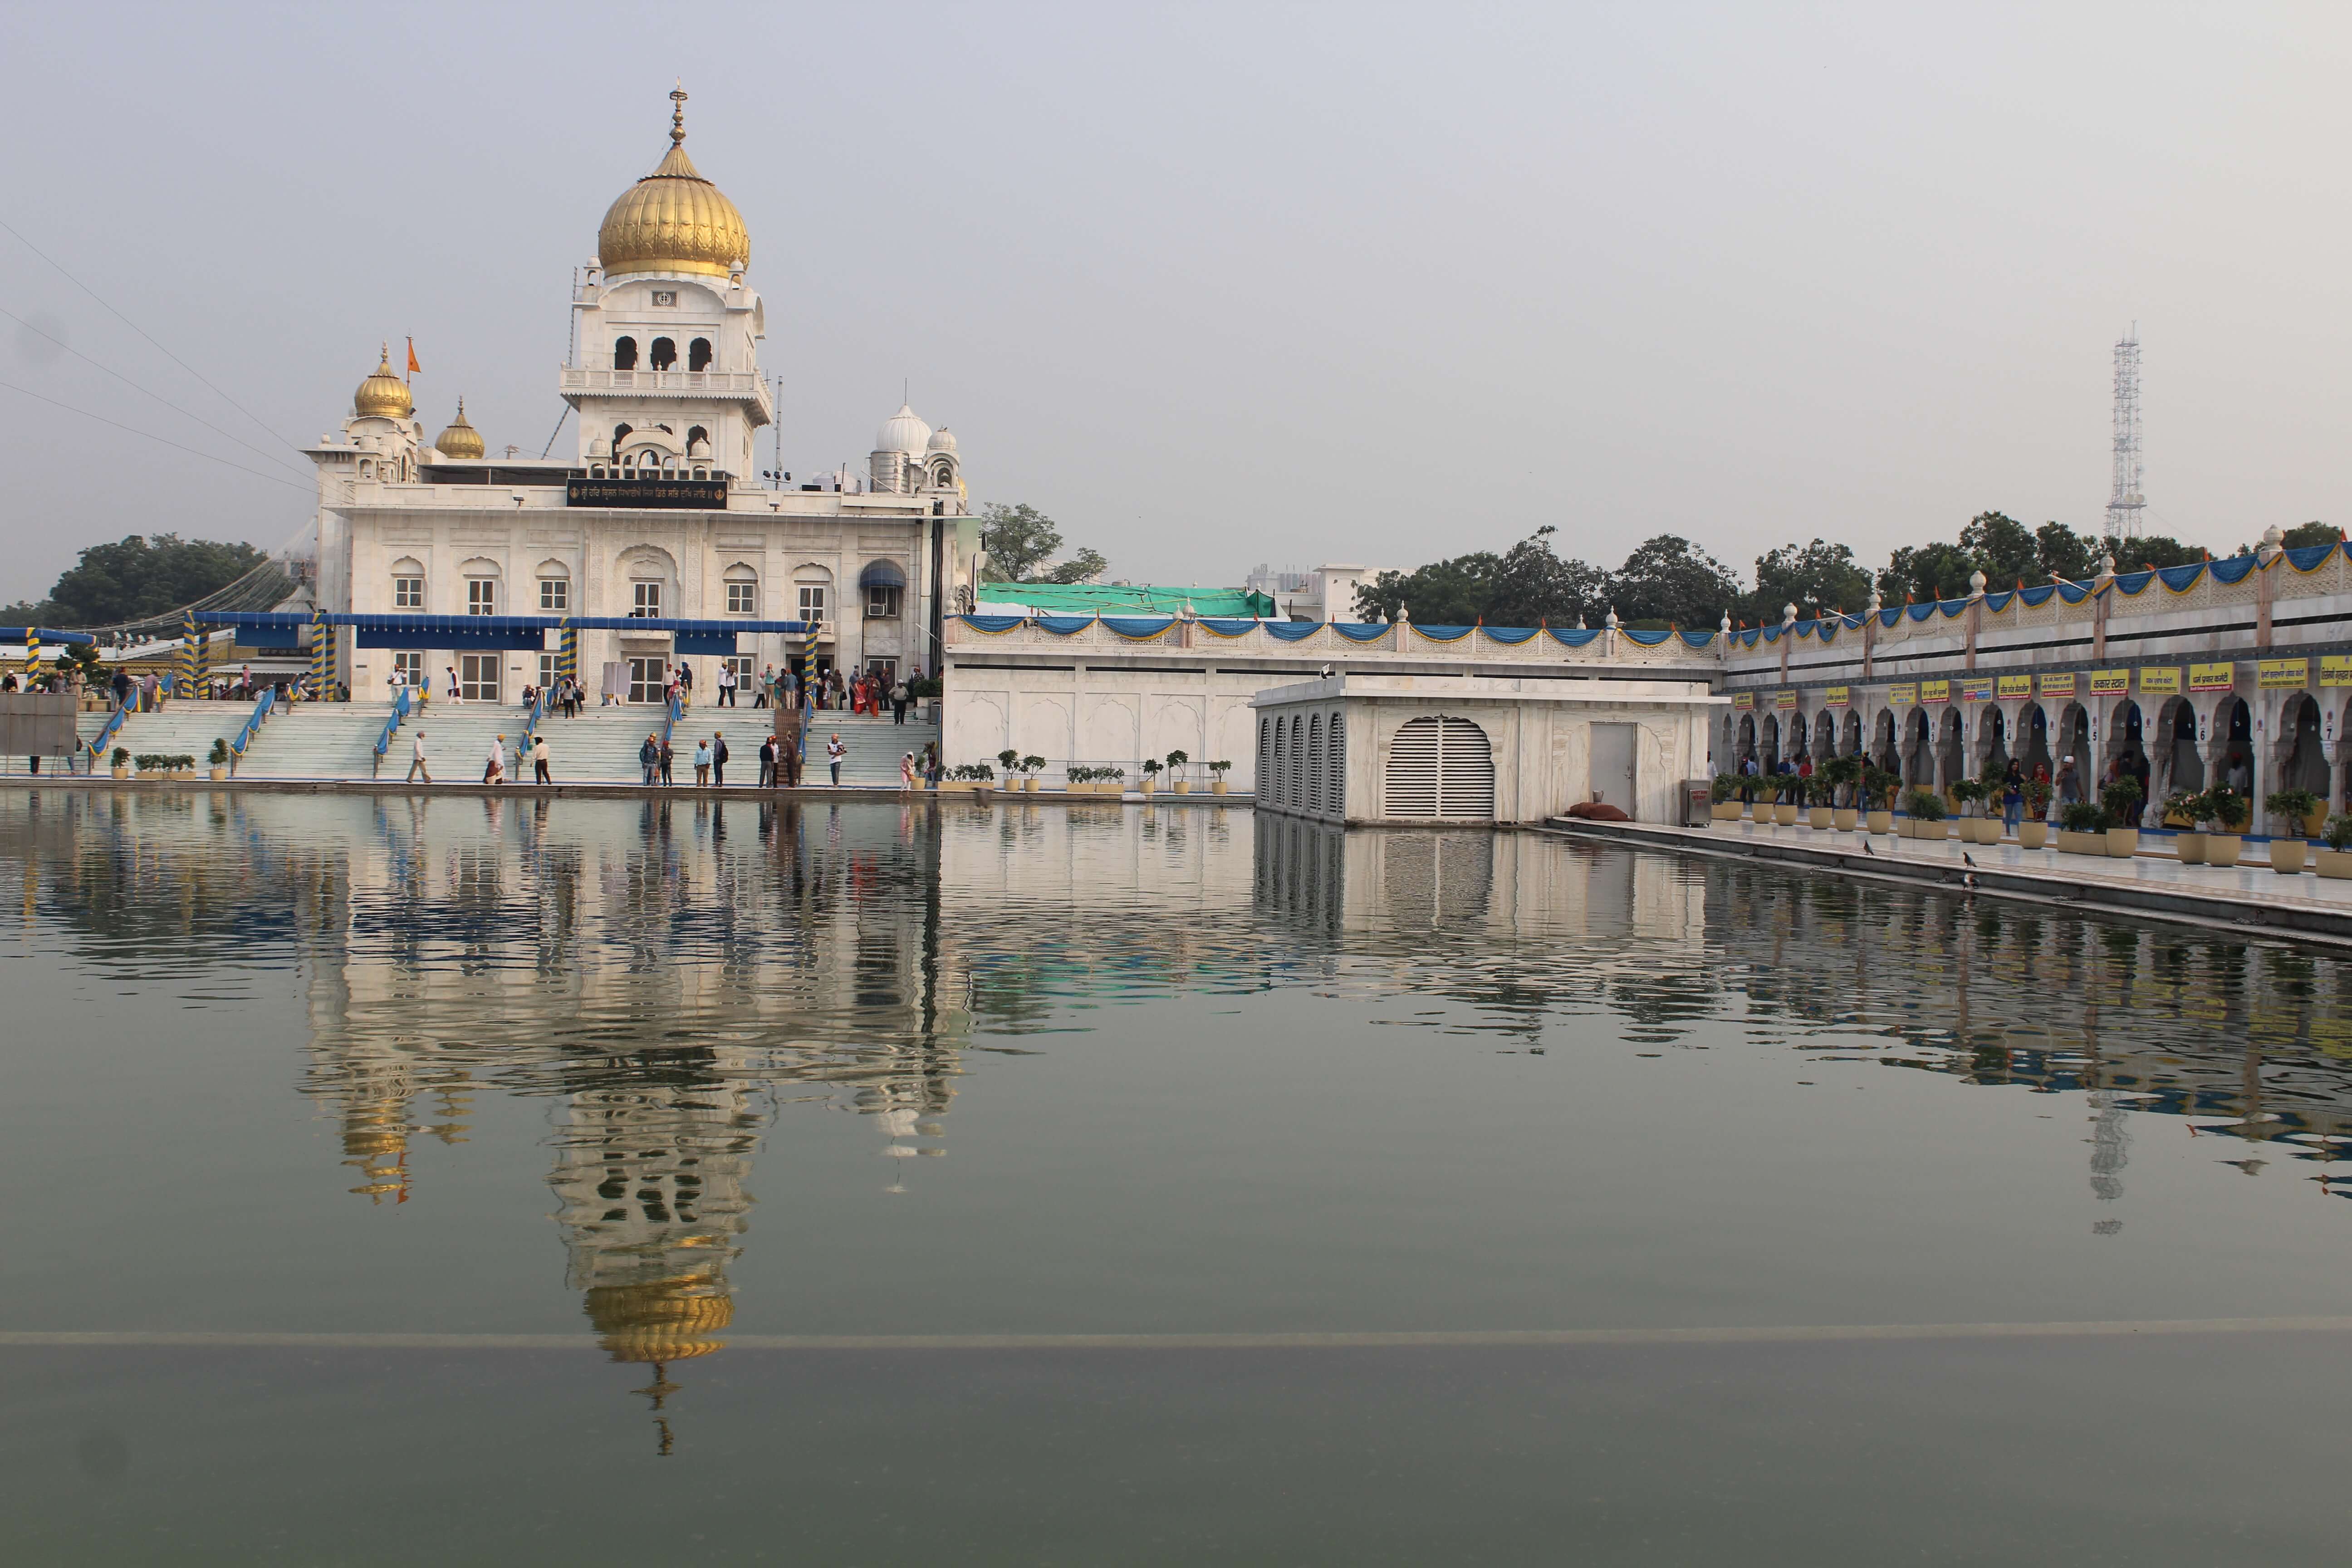 Sikh Tempel in Delhi